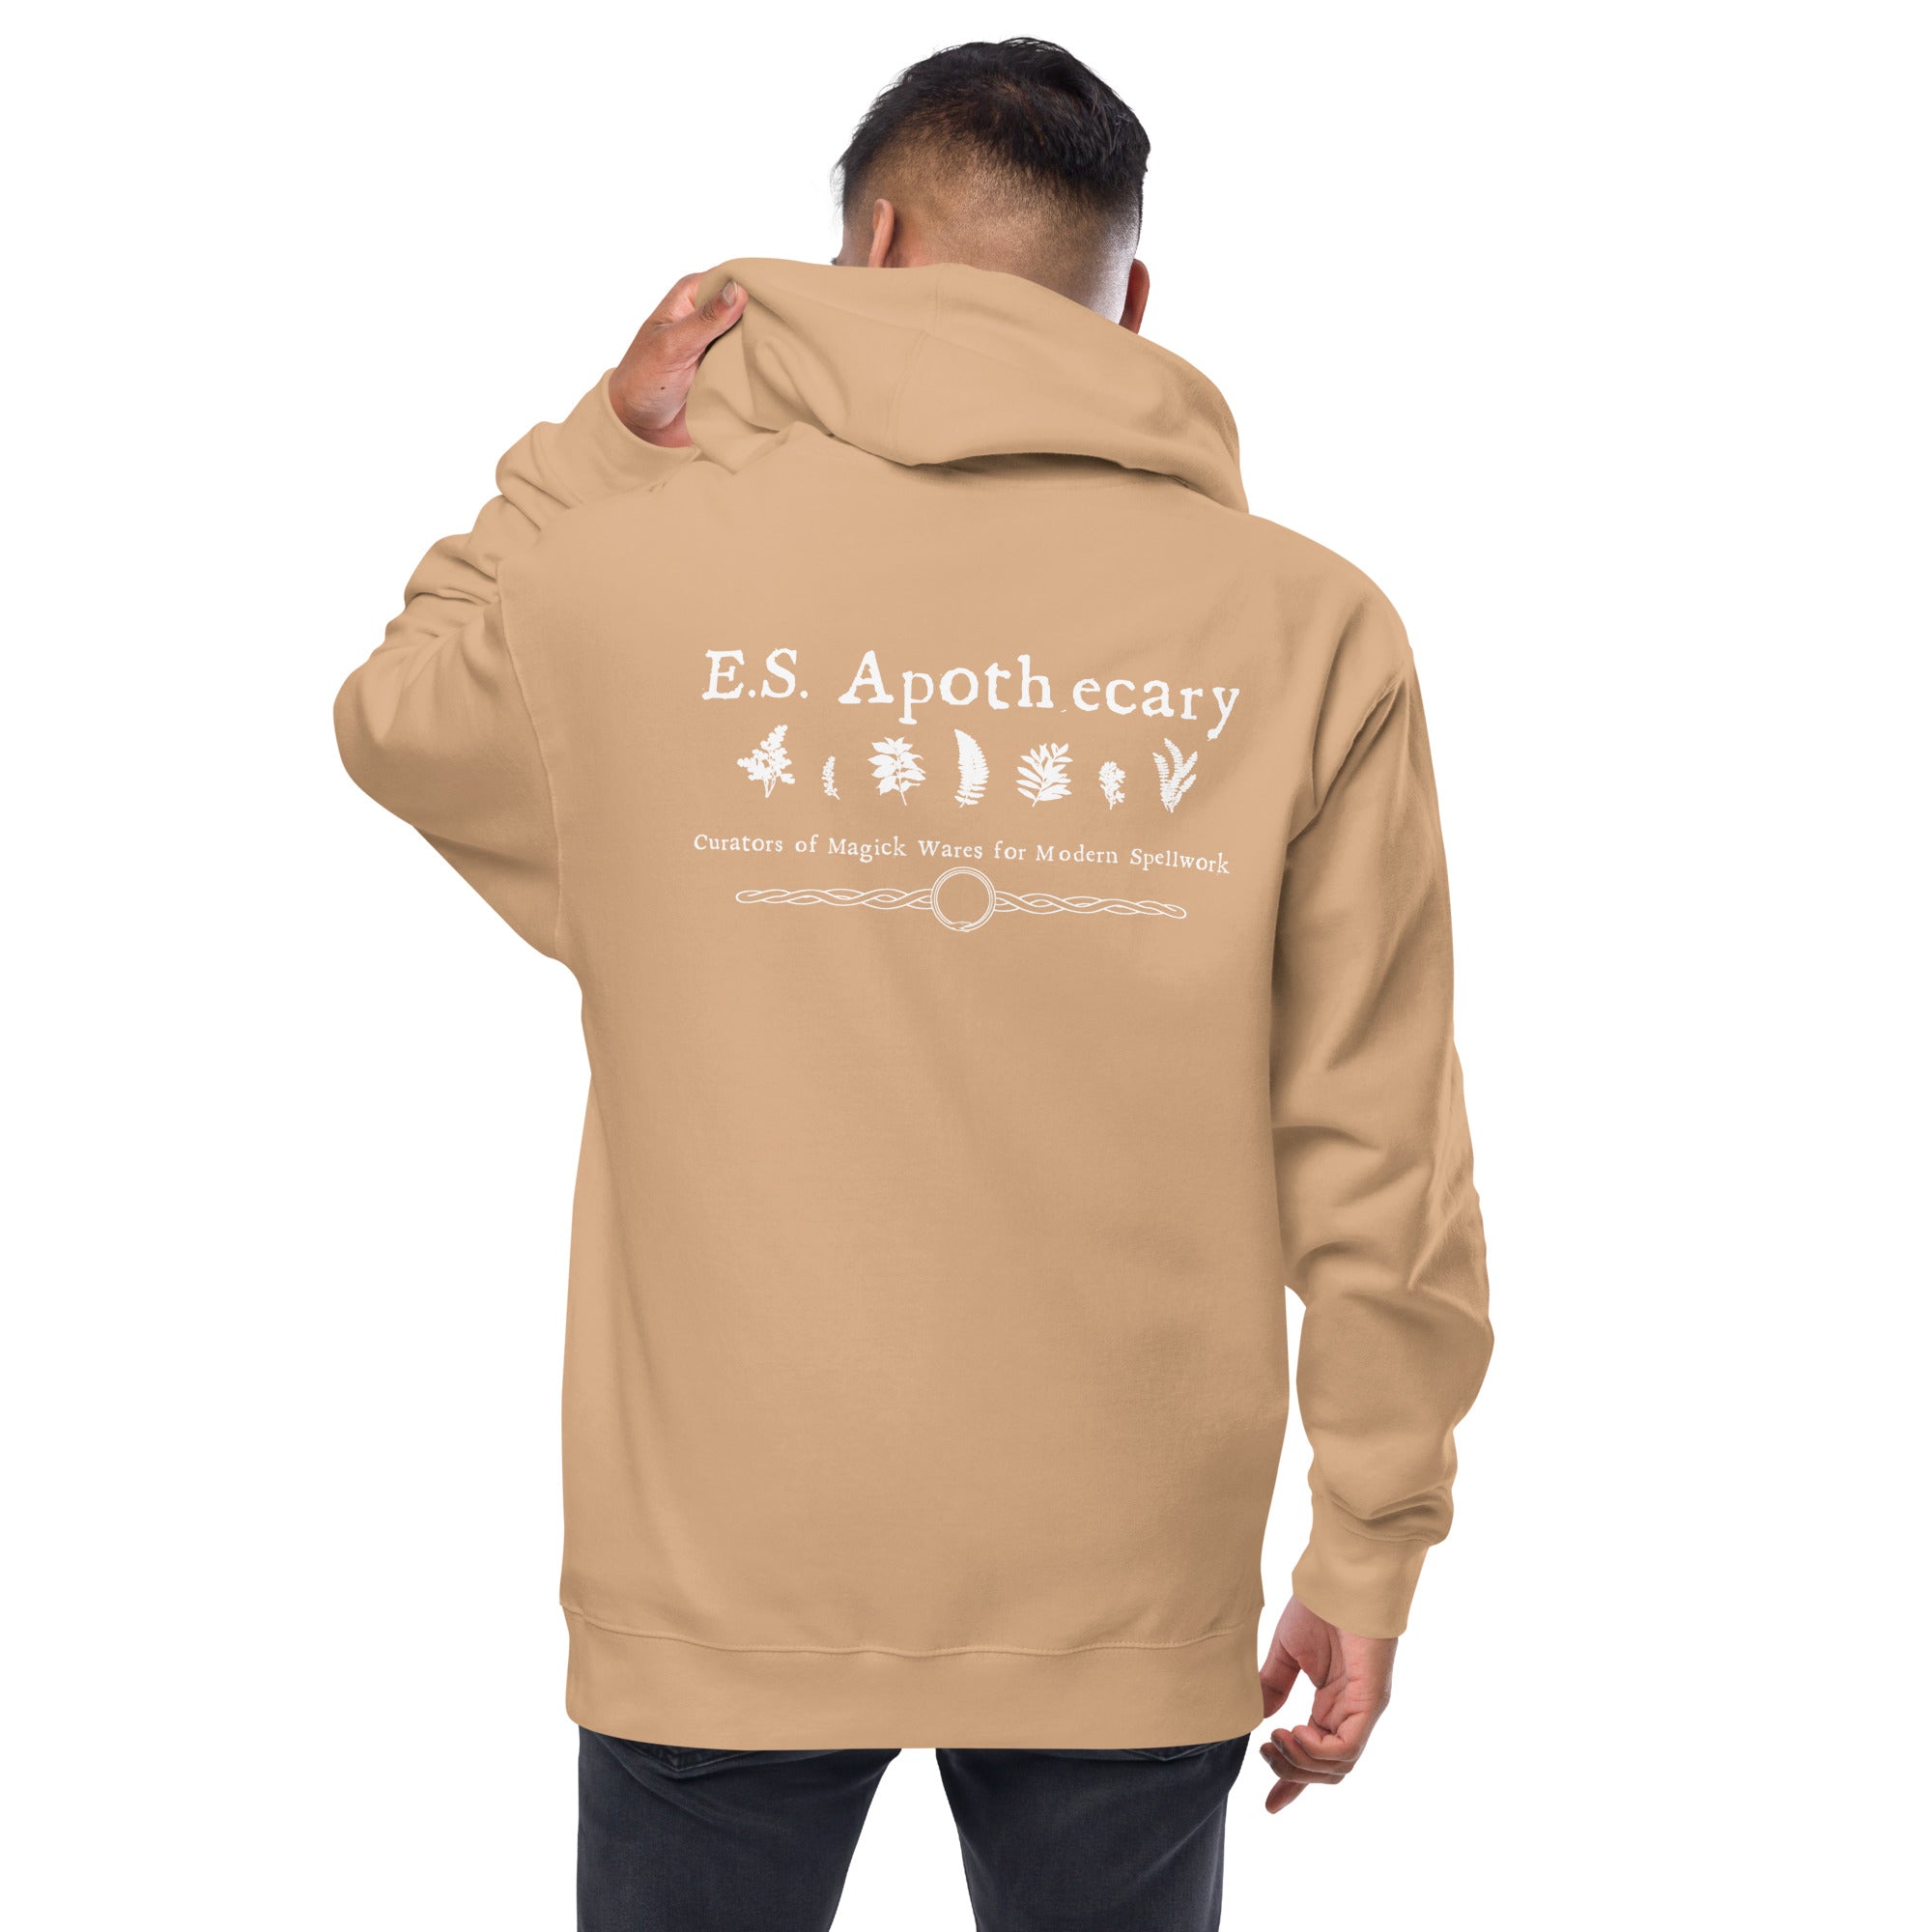 E.S. Apothecary - Unisex fleece zip up hoodie - Earthly Secrets